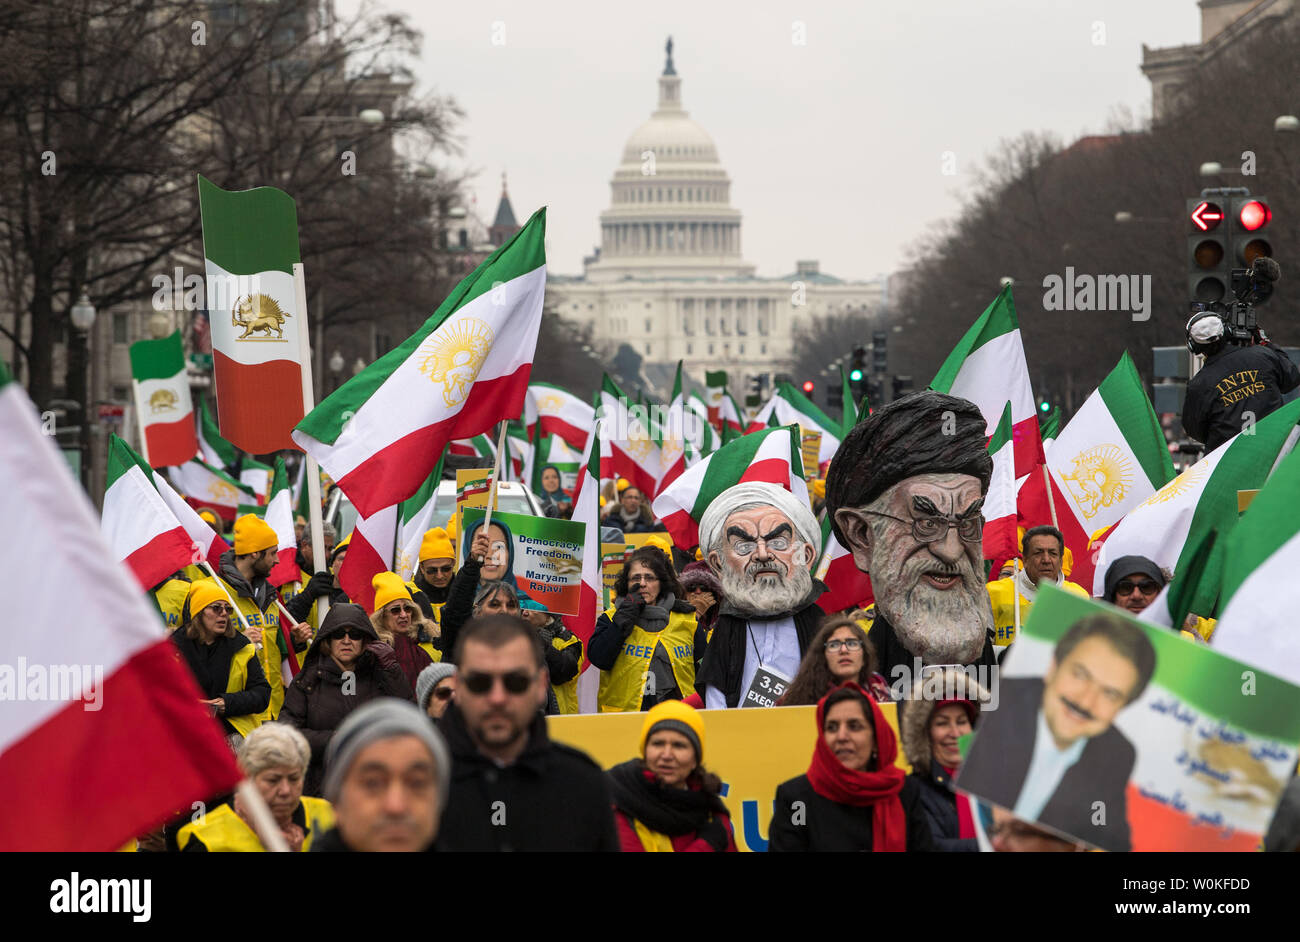 Demonstrationen beteiligen bei einer Rallye durch die Organisation der iranisch-amerikanische Gemeinschaften für einen Regimewechsel im Iran, in Washington am 8. März 2019. Die Gruppe ruft für ein iranisches Volk Aufstand für einen Regimewechsel in den herrschenden religiösen Partei bringen. Foto von Kevin Dietsch/UPI Stockfoto